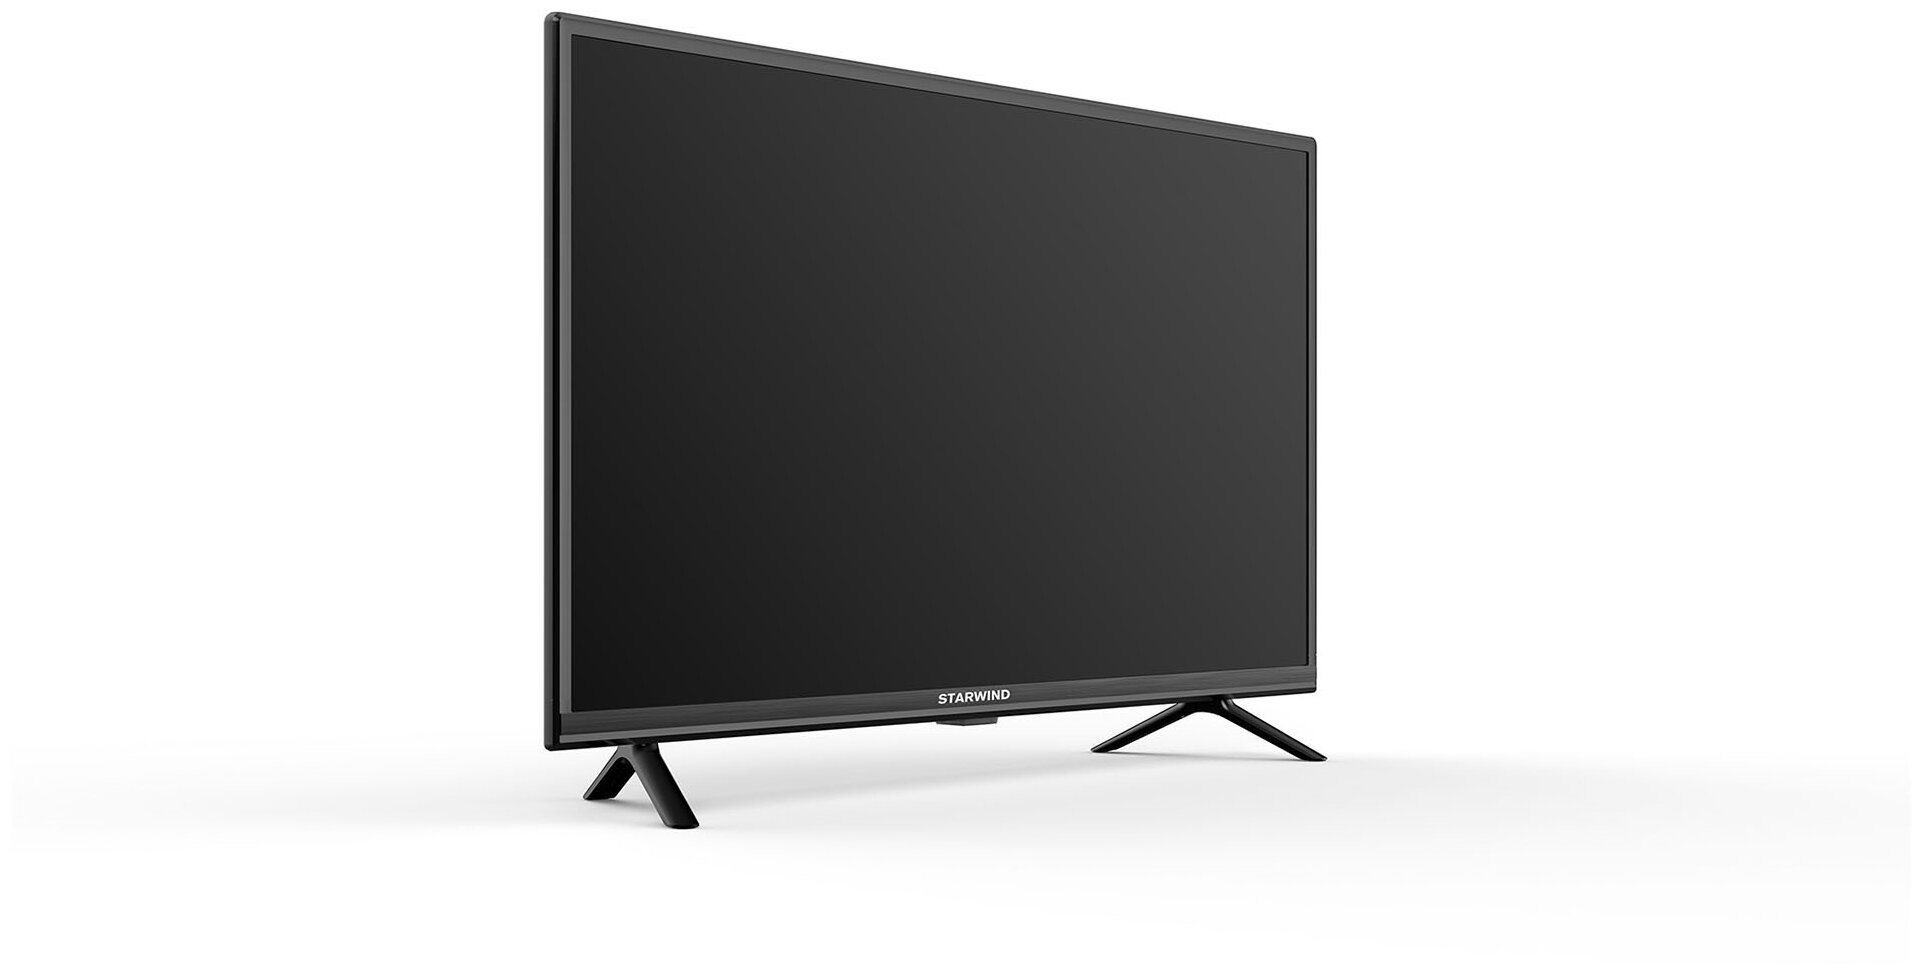 Телевизор Starwind Яндекс.ТВ SW-LED32SG304, 32", LED, HD, Яндекс.ТВ, черный - фото №4